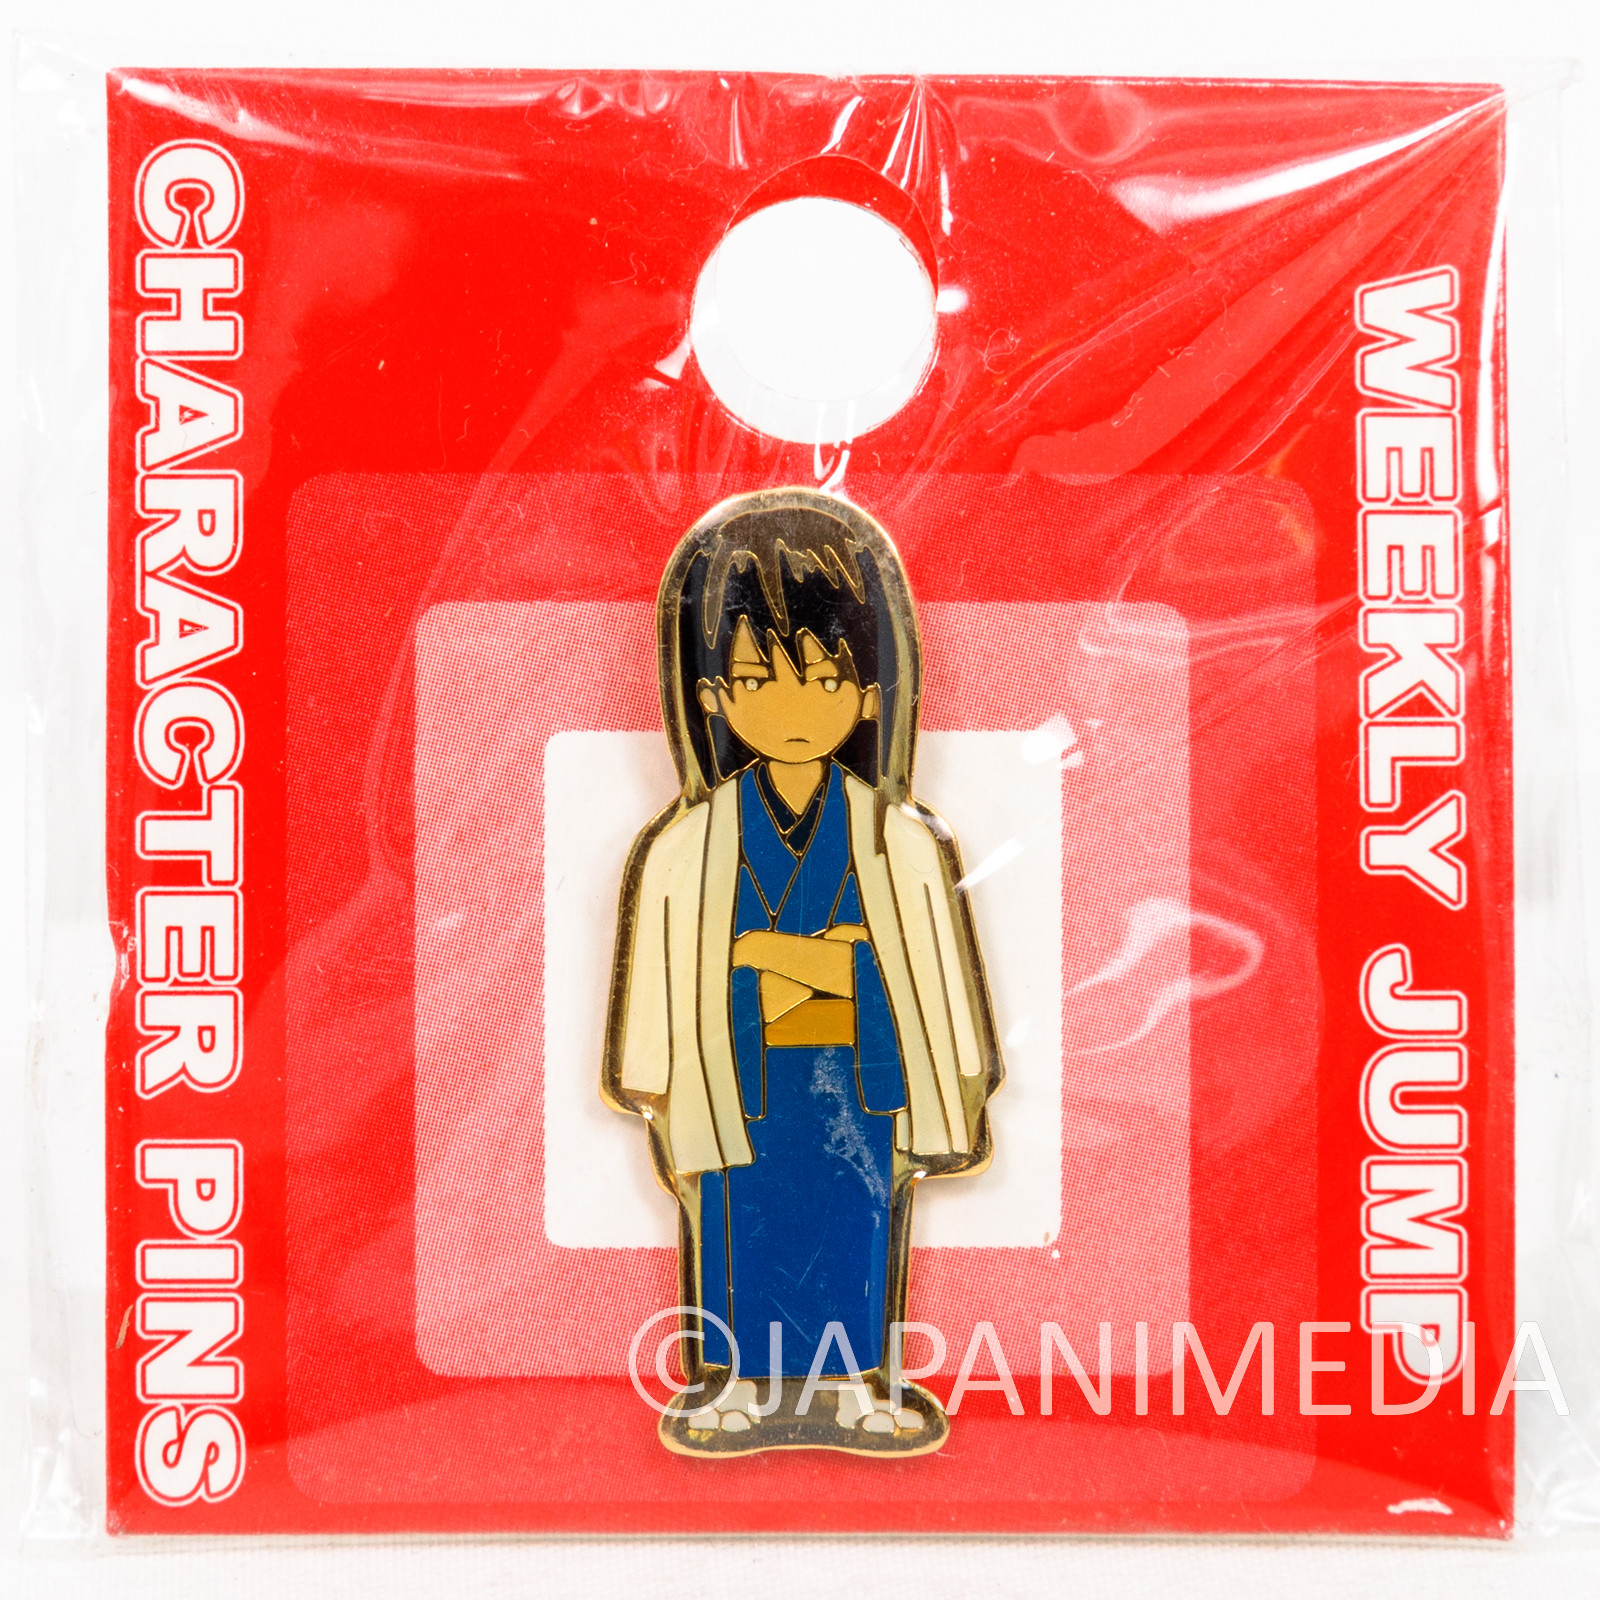 Gintama Kotaro Katsura Weekly Jump Character Pins JAPAN ANIME MANGA